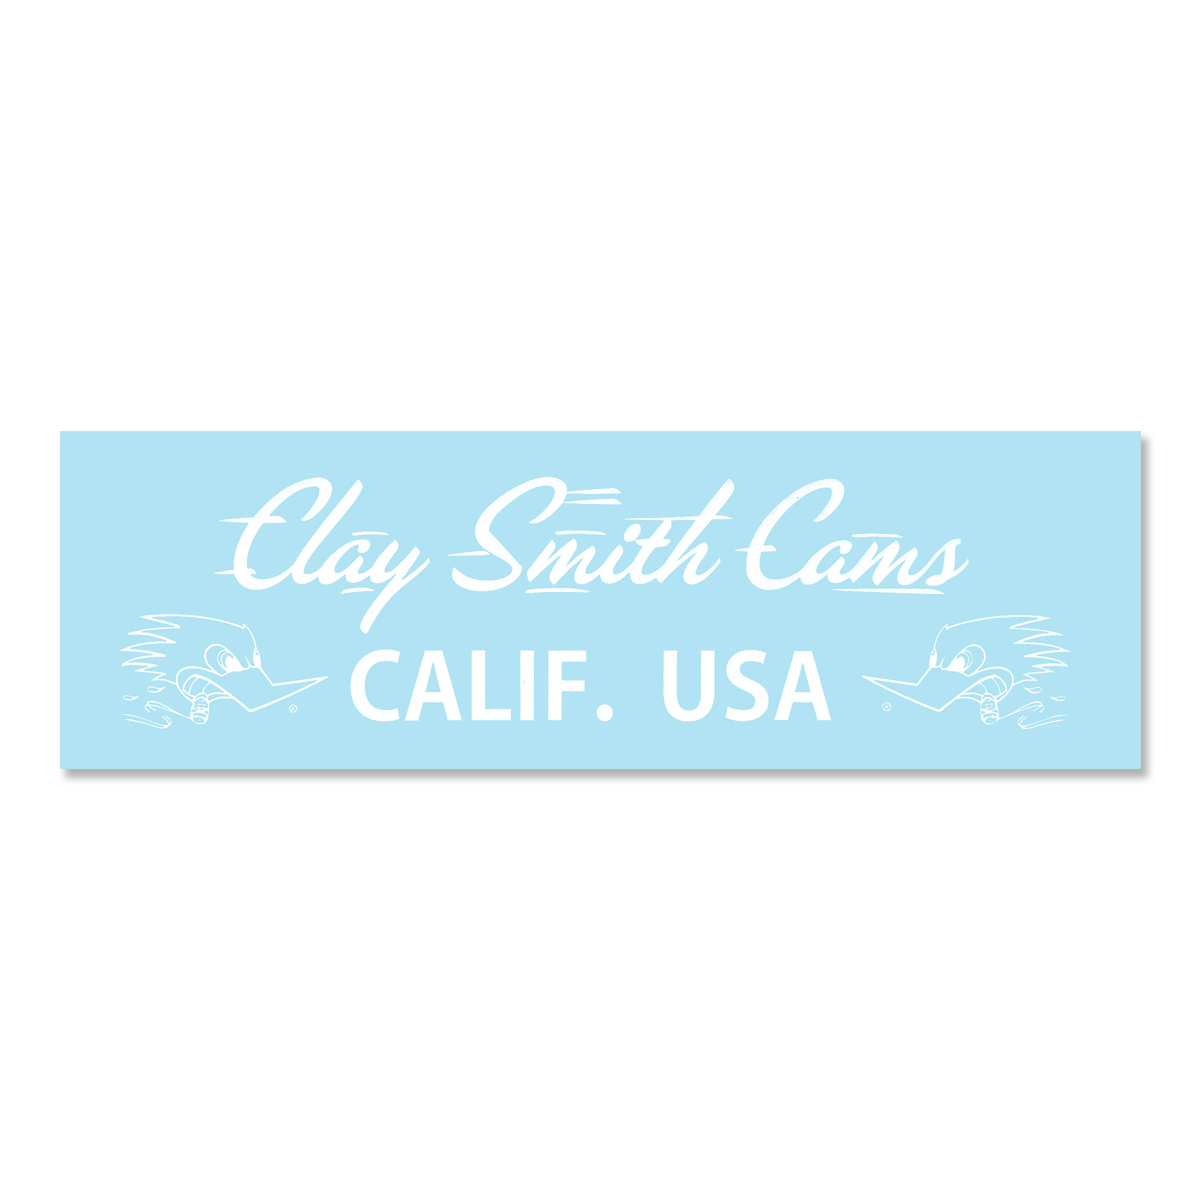 画像1: クレイ スミス ホワイト CALIF. USA ステッカー (1)